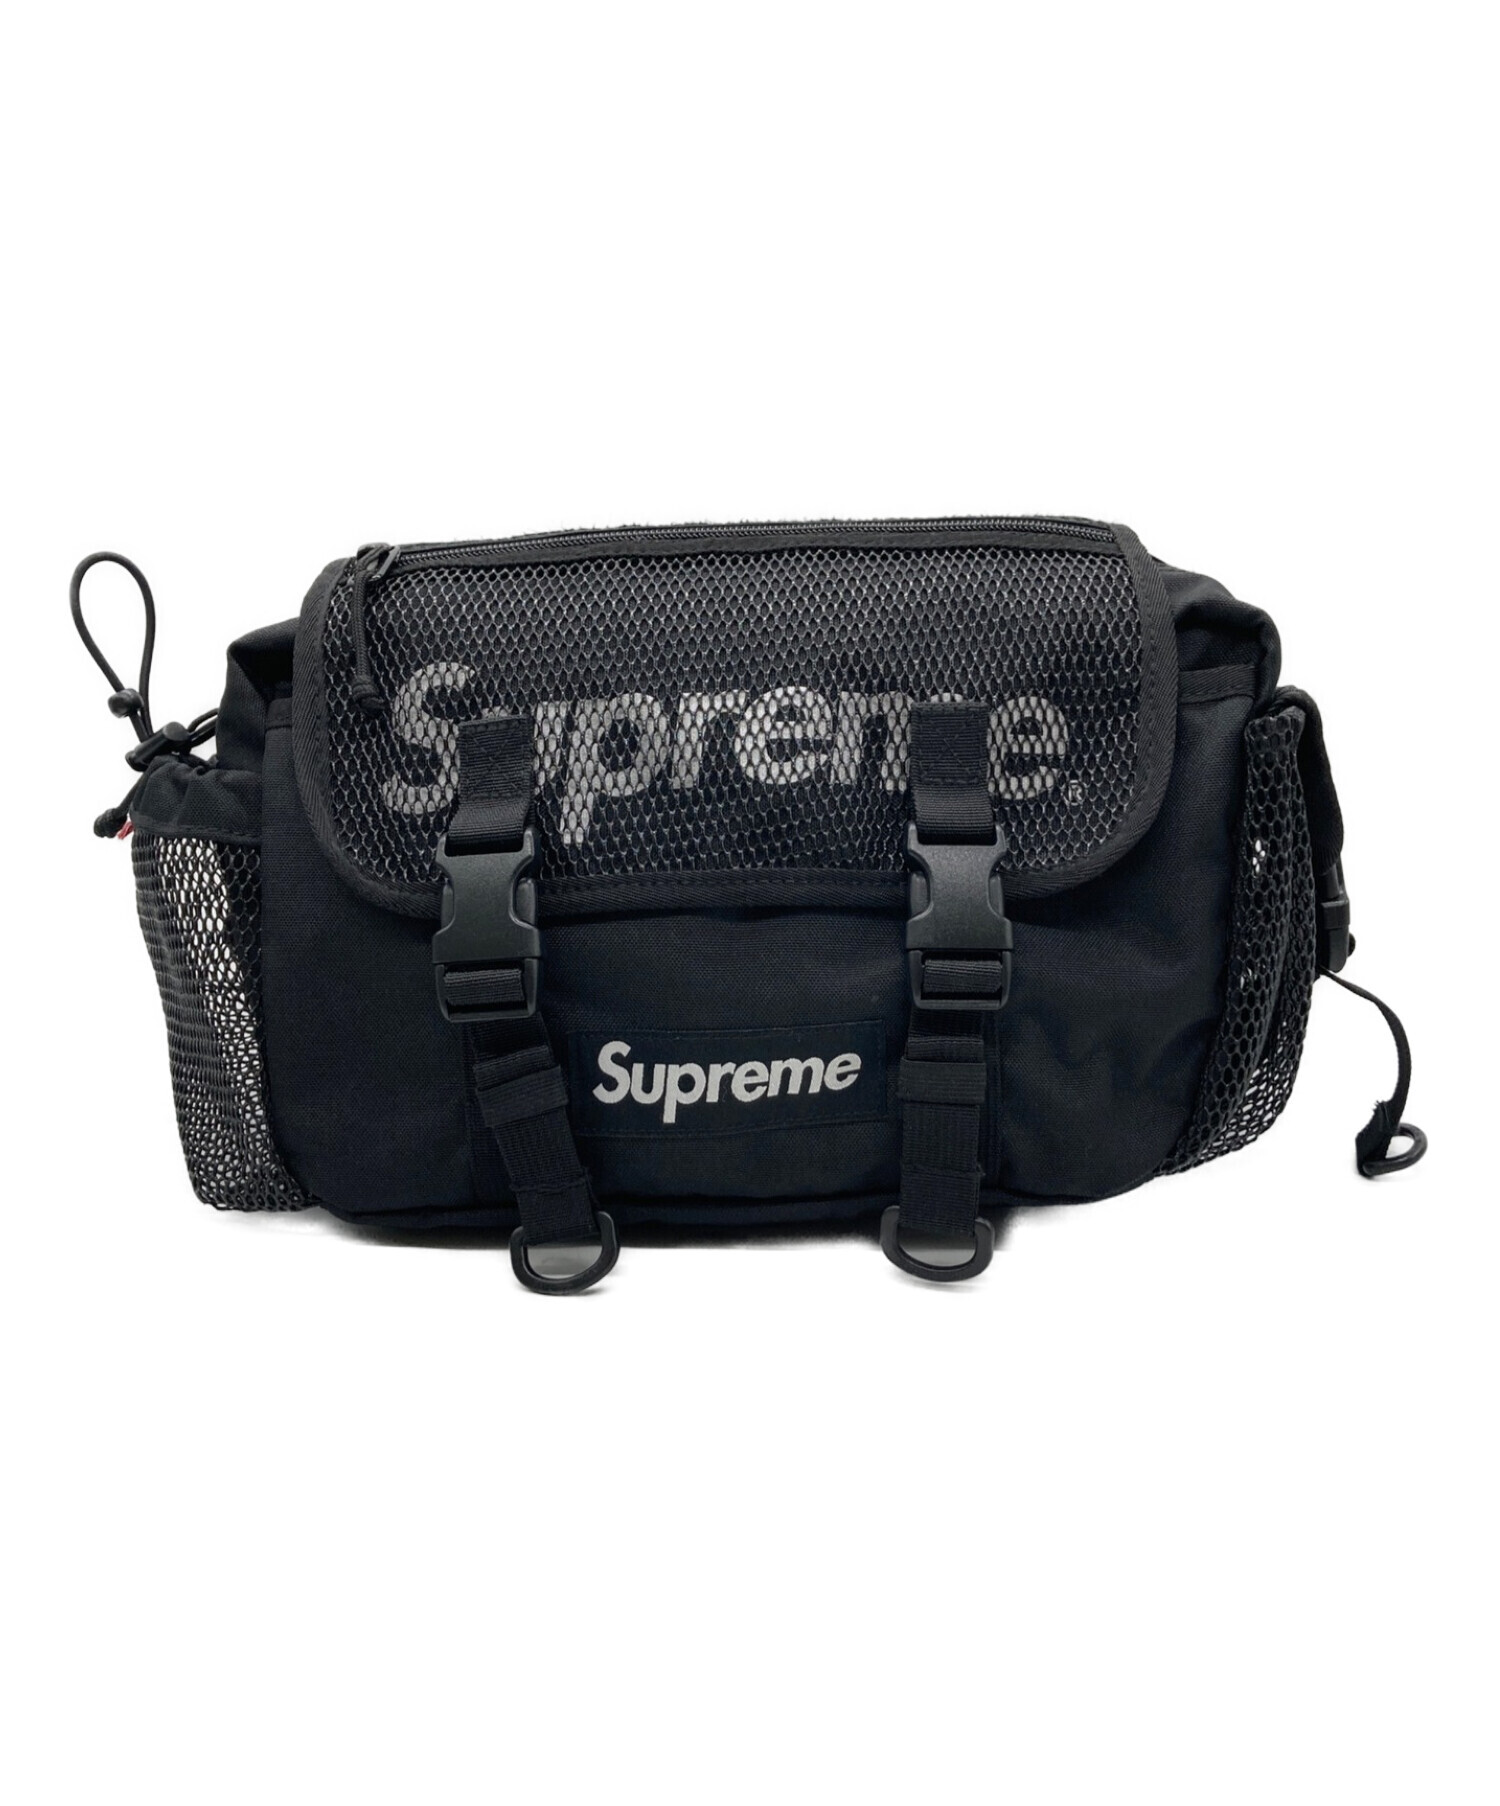 シュプリーム supreme 20SS ウエストバックWaist Bag 黒